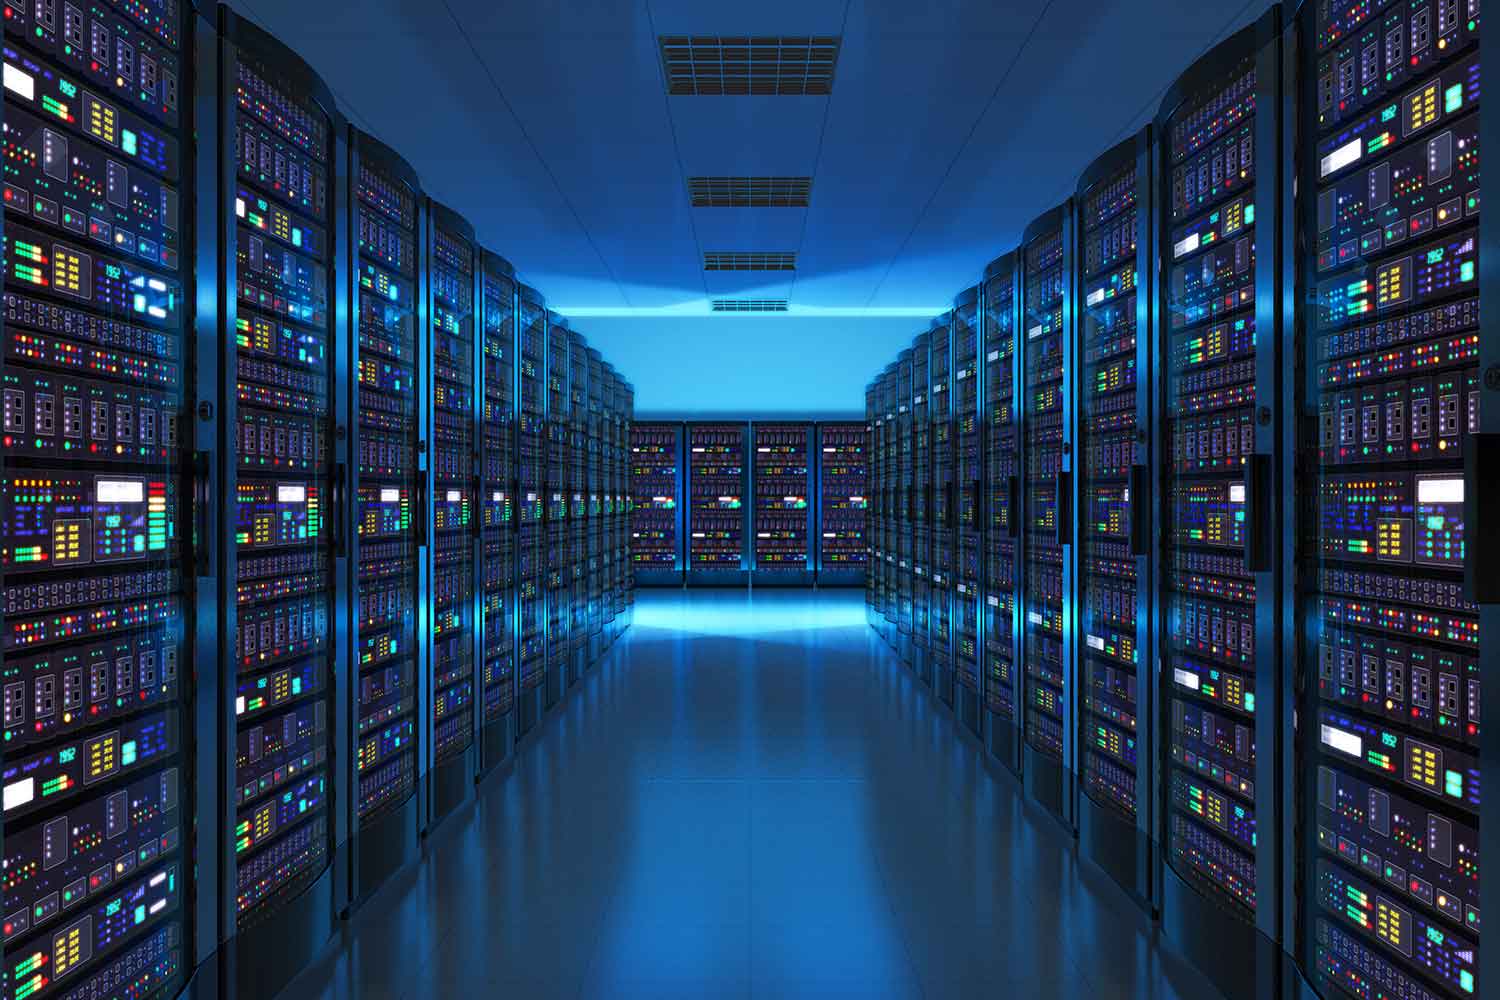 Aufnahme eines Rechenzentrums mit mehreren Reihen voll funktionsfähiger Server-Racks. 